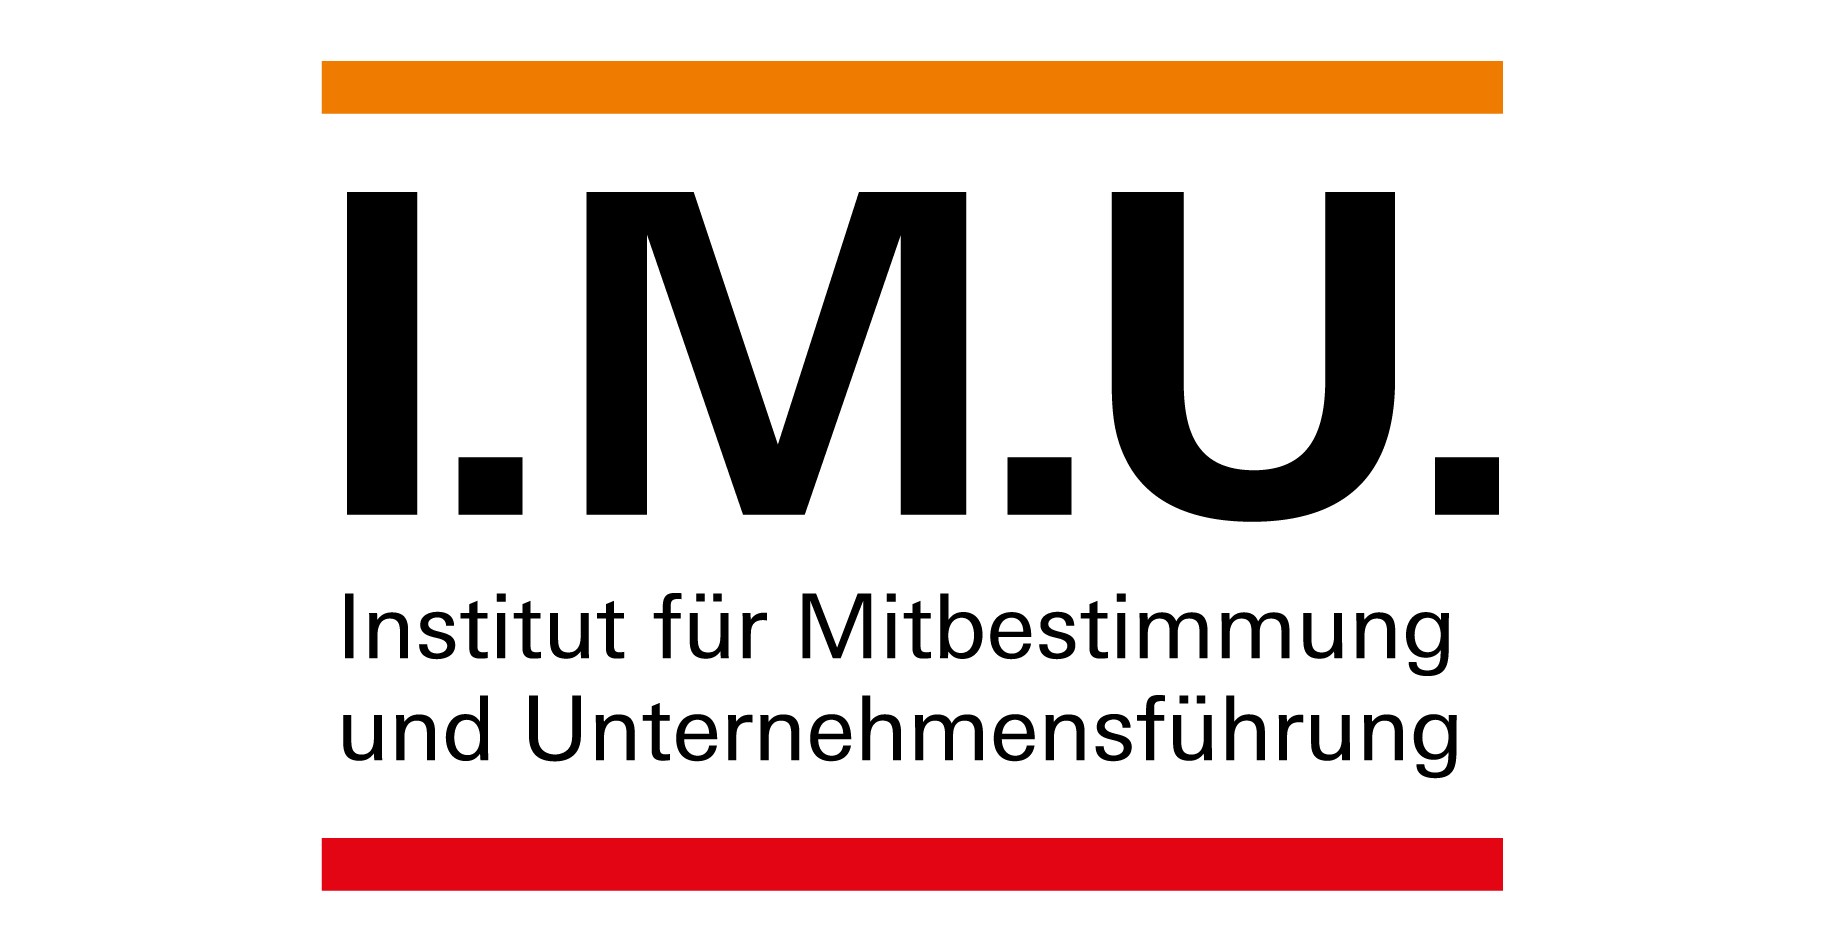 Institut für Mitbestimmung und Unternehmensführung in der Hans-Böckler-Stiftung (I.M.U.)